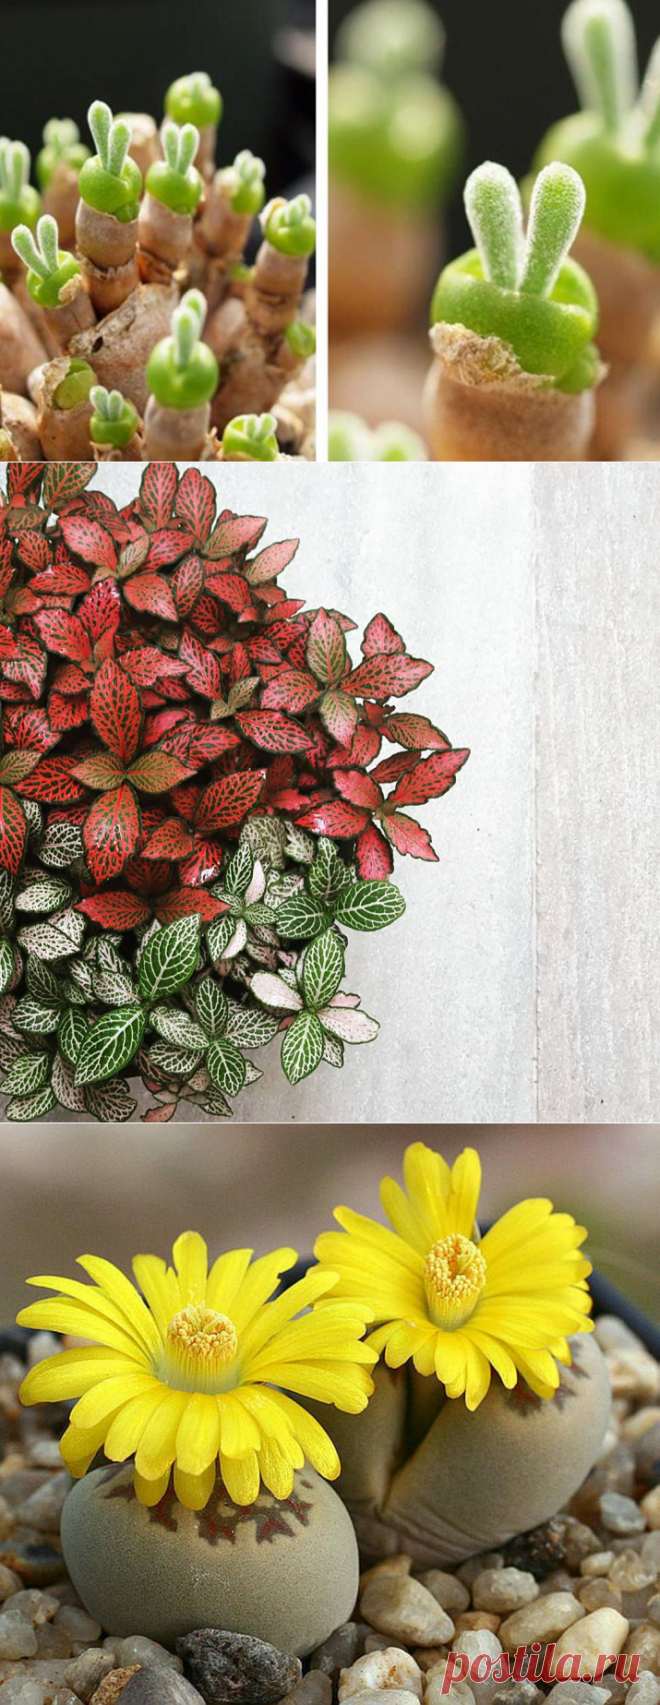 12 самых красивых и неприхотливых комнатных растений, которые сделают ваш дом уютнее